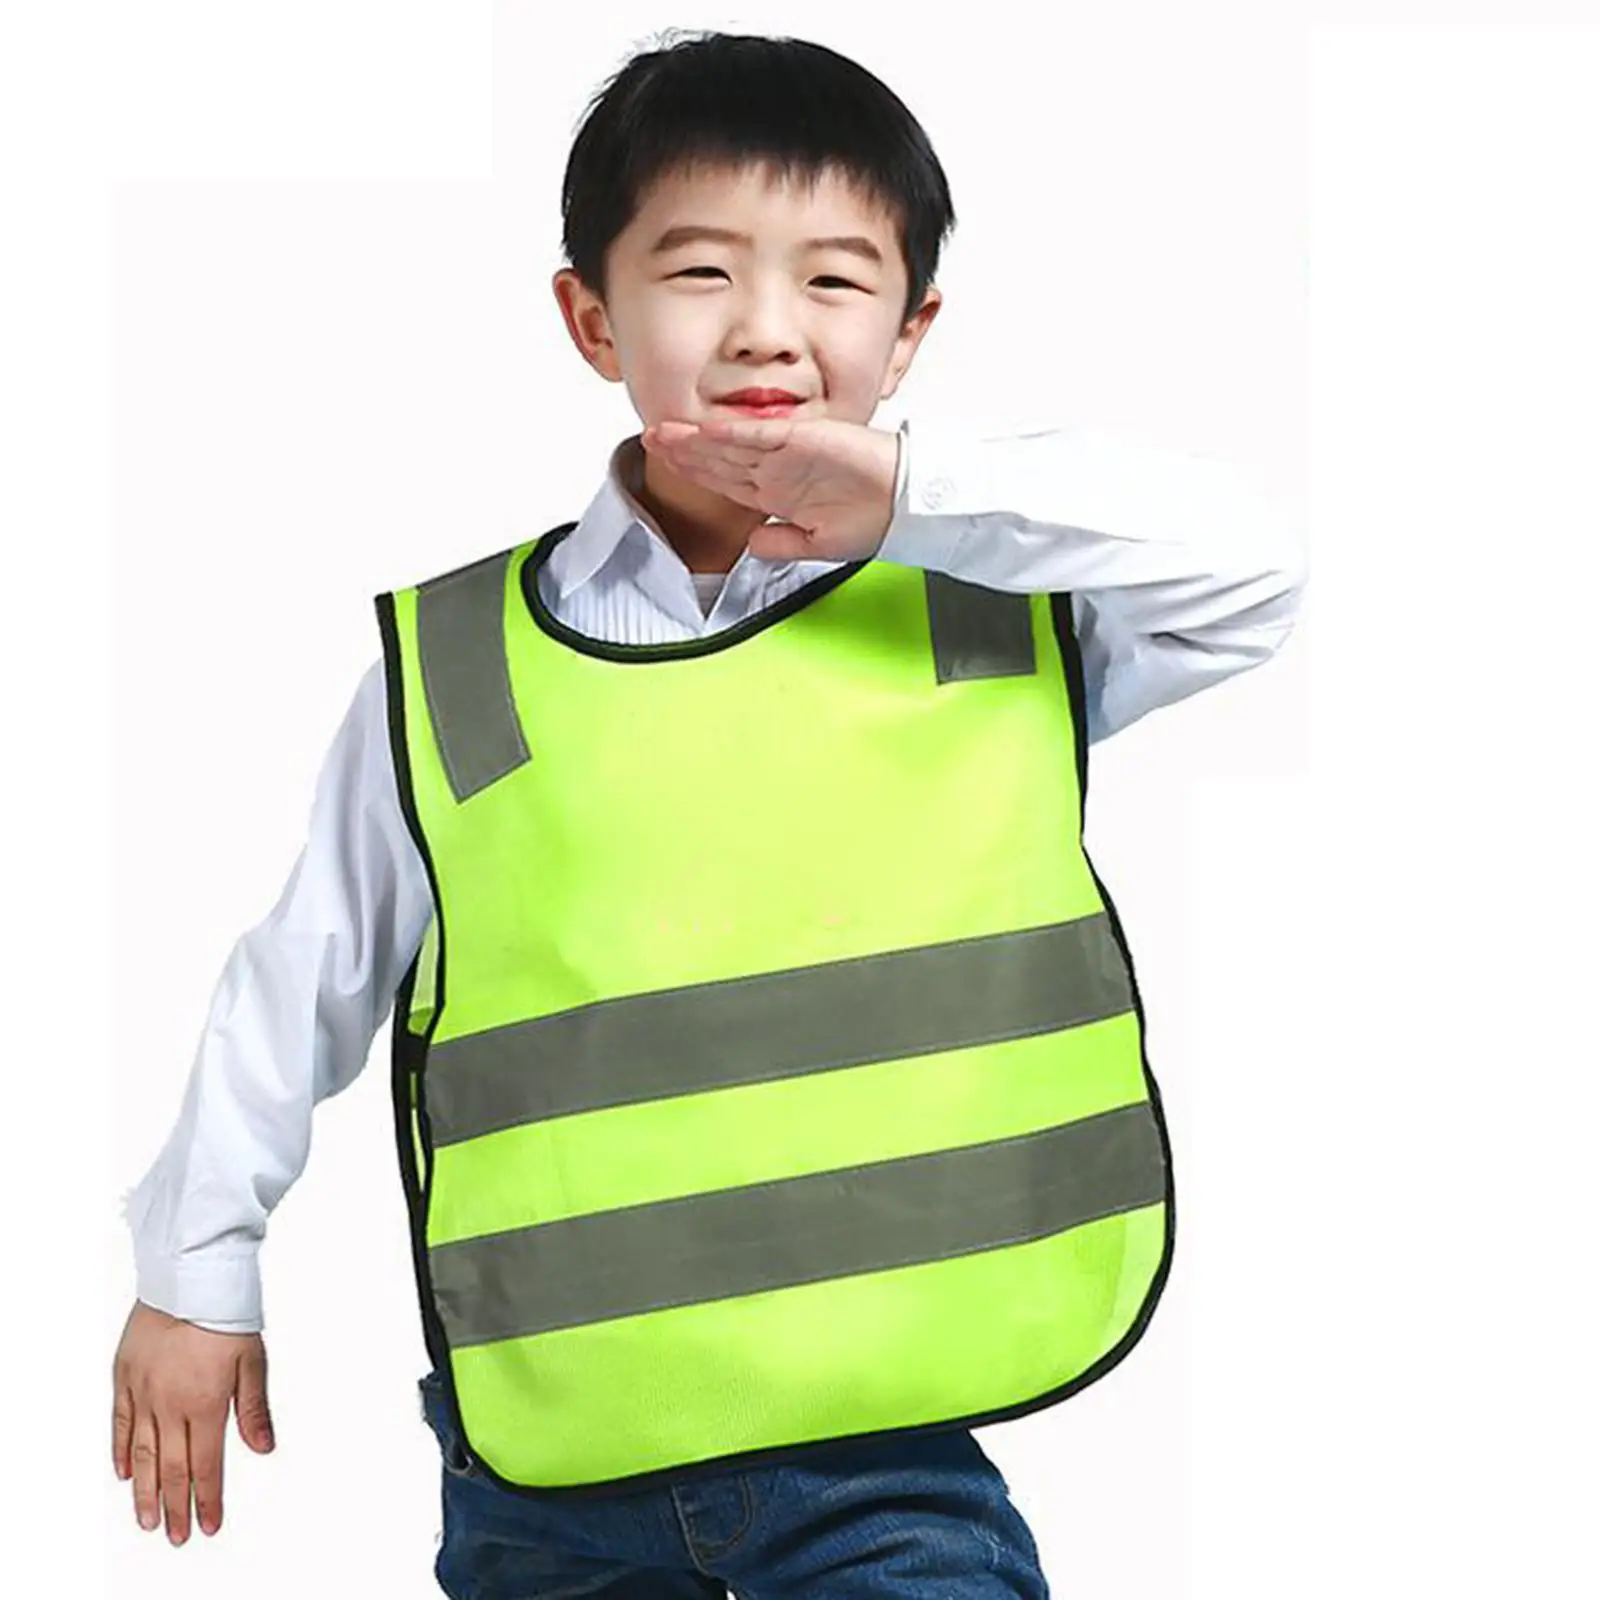   Children Safety Reflective Vest Elementary School Traffic Wear